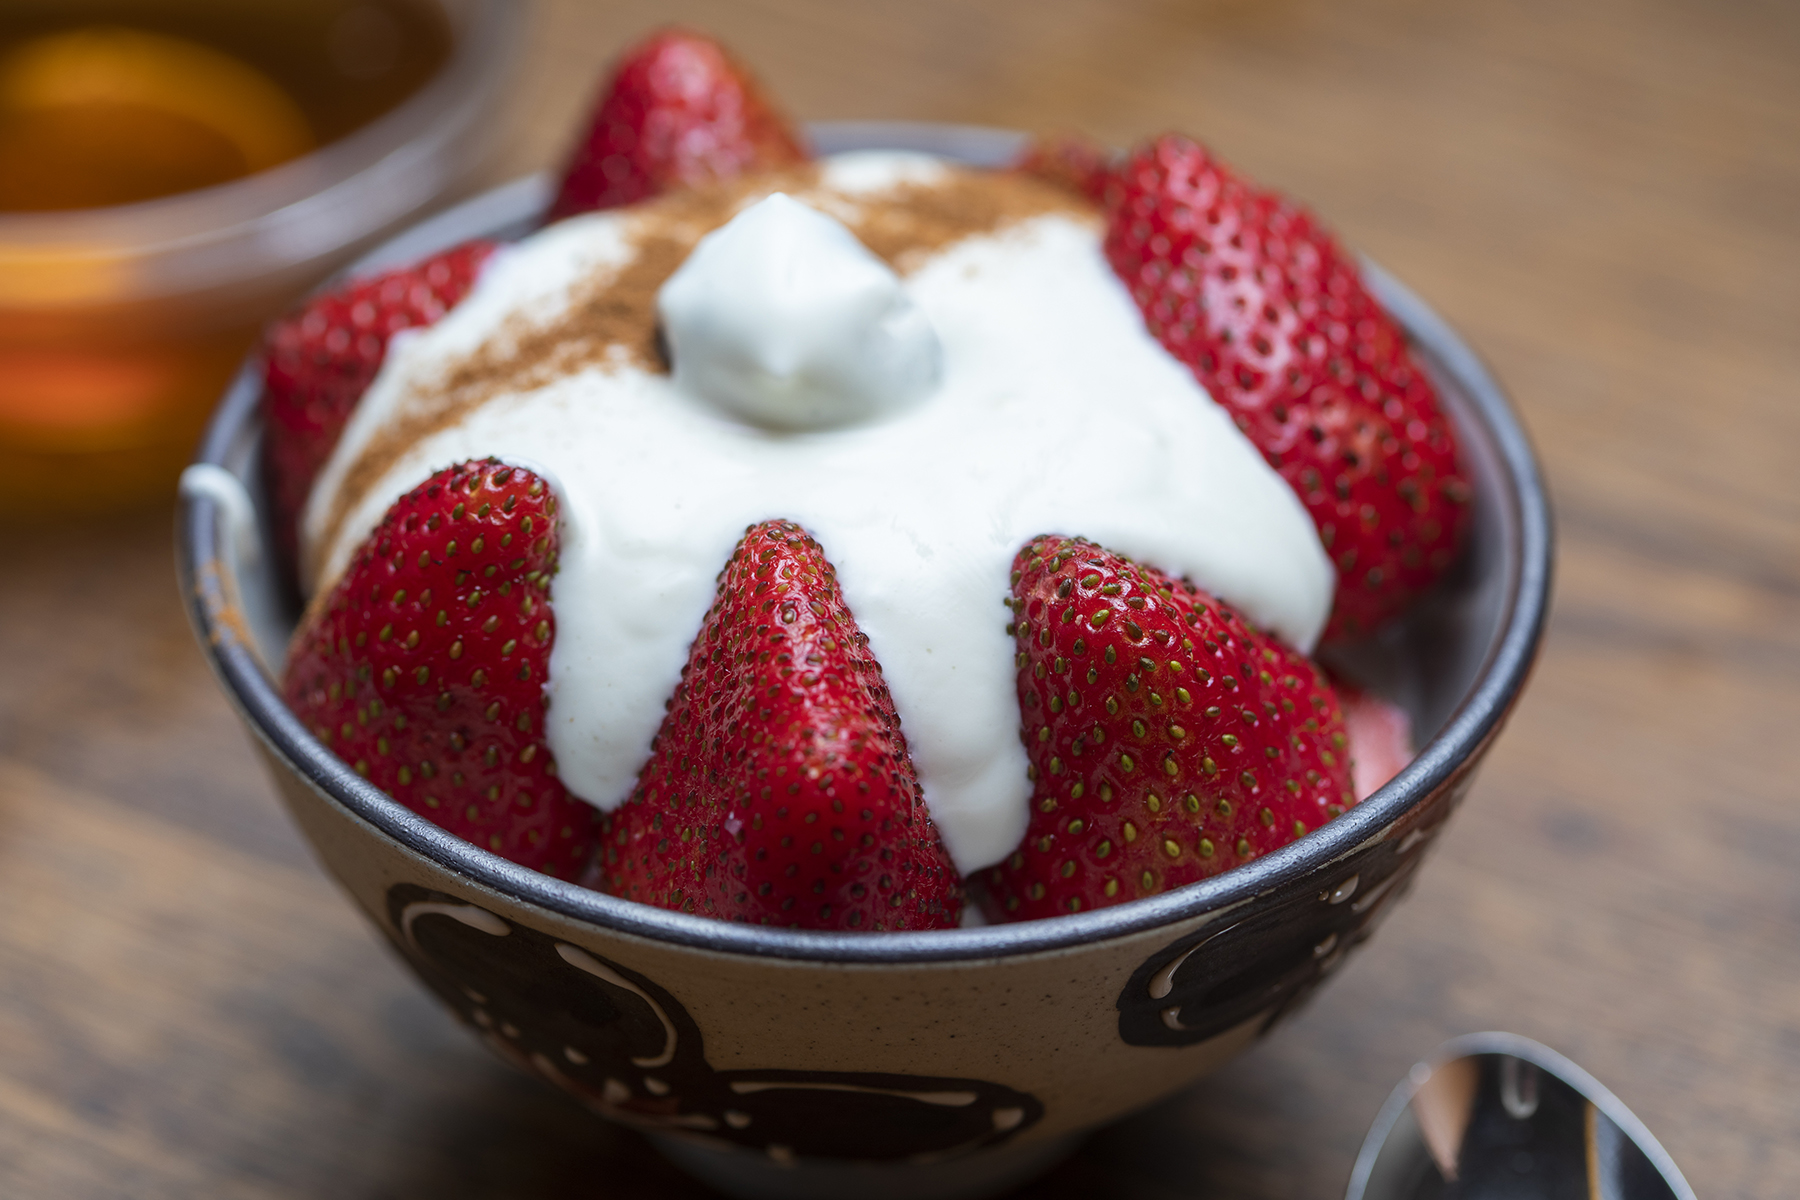 Whipped Yogurt “Cream” Recipe